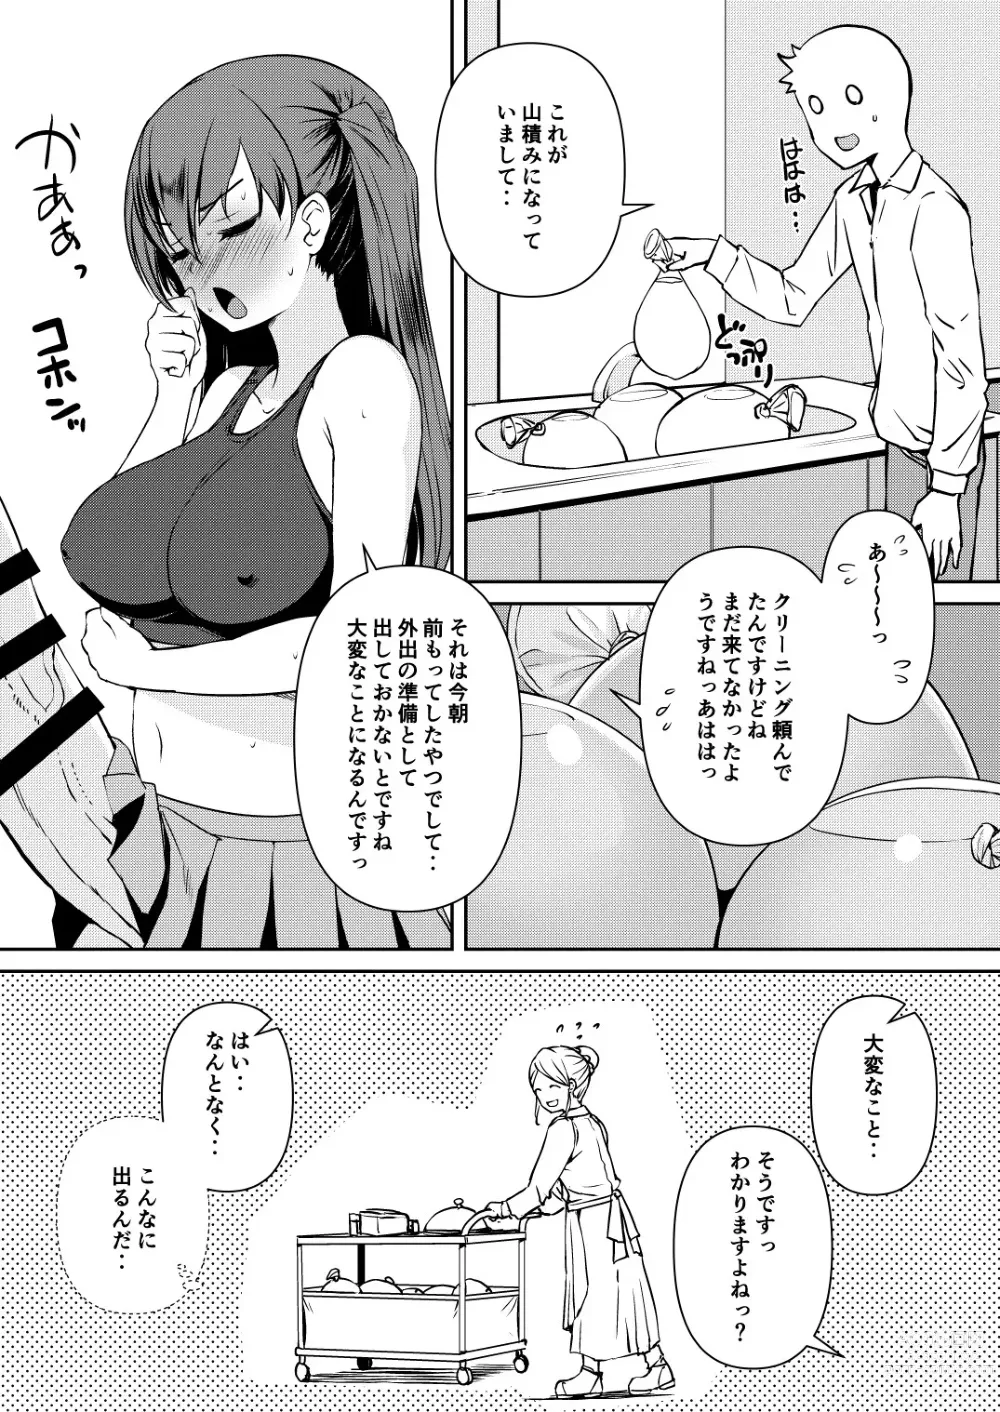 Page 6 of doujinshi Futanari Kanojo 2 - Futa Girl Friend 2